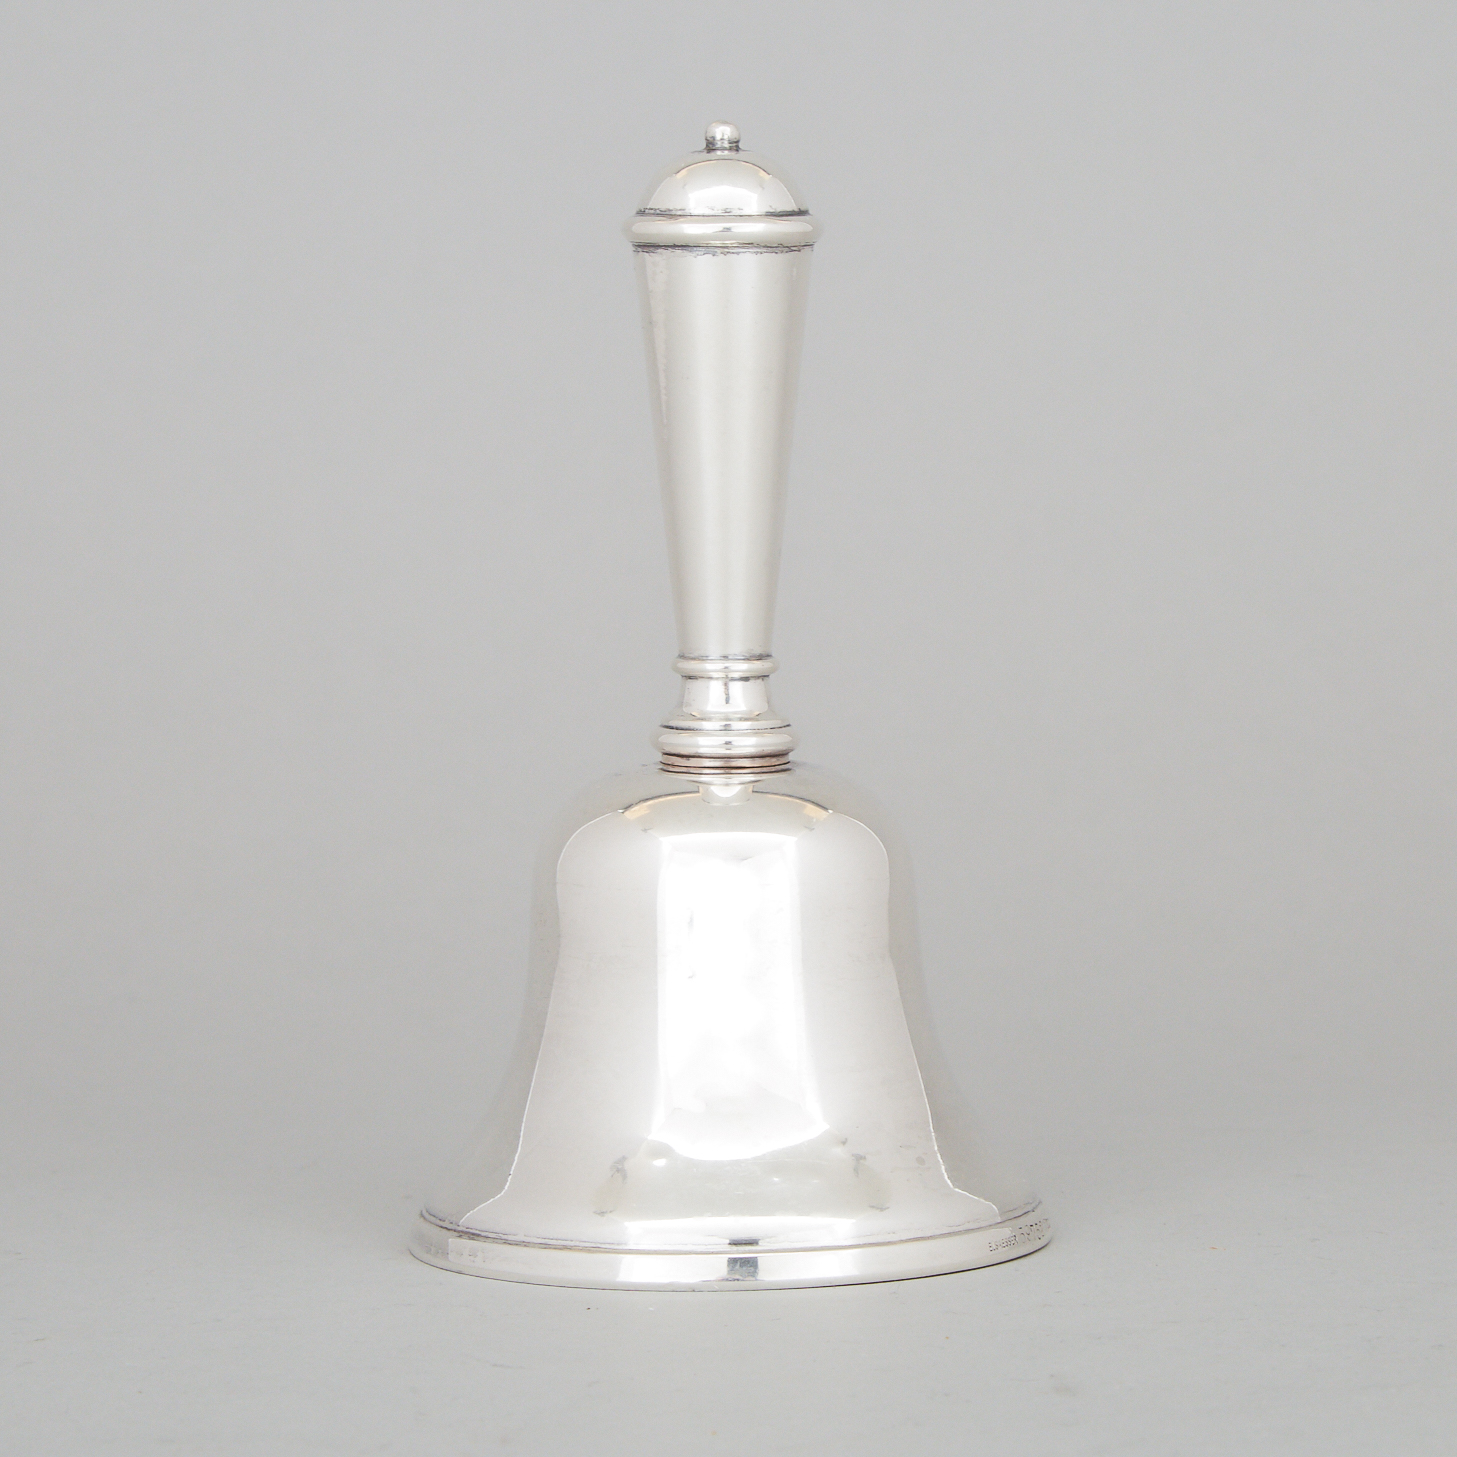 German Silver Table Bell, Koch & Bergfeld, Bremen, early 20th century